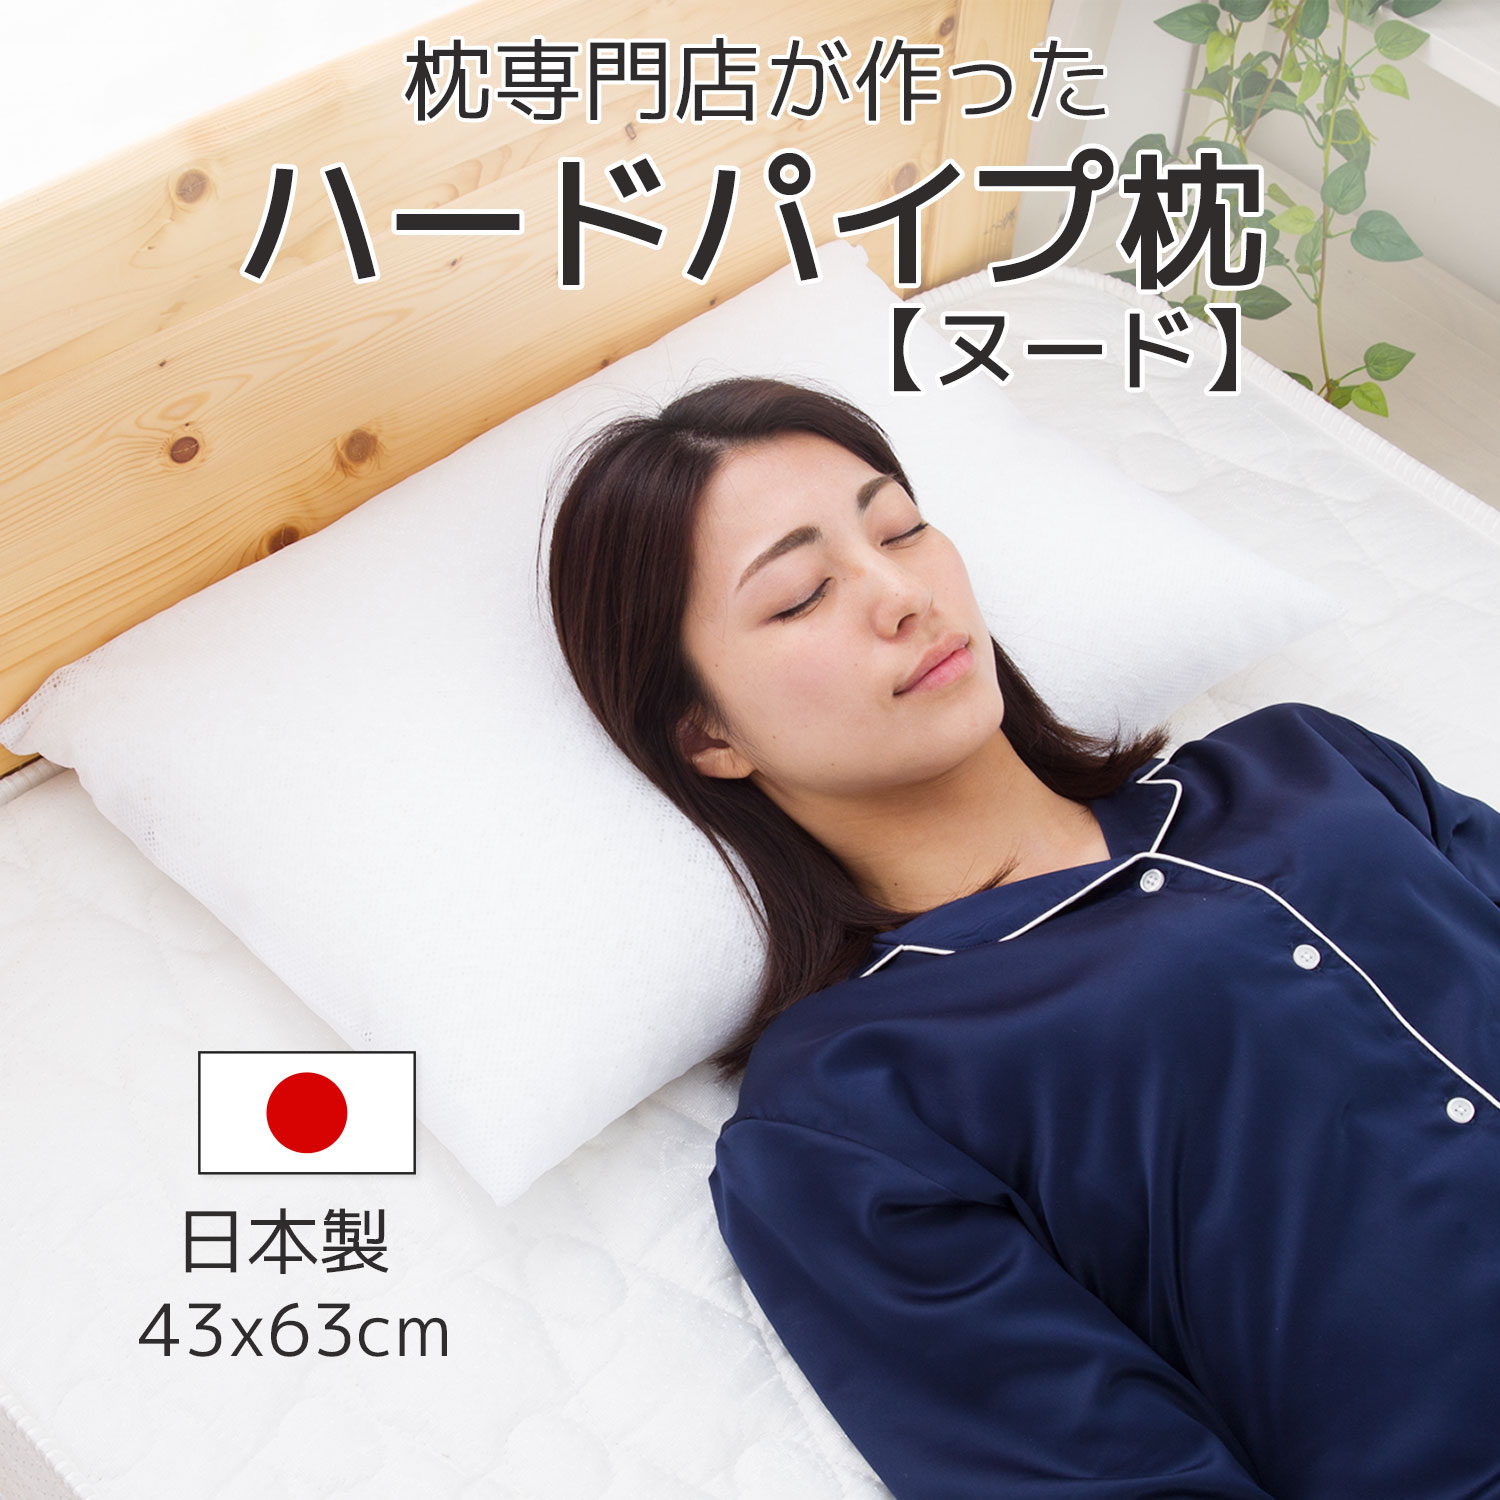 【楽天市場】パイプ枕 ハードパイプまくら 洗える 枕専門店が作った 